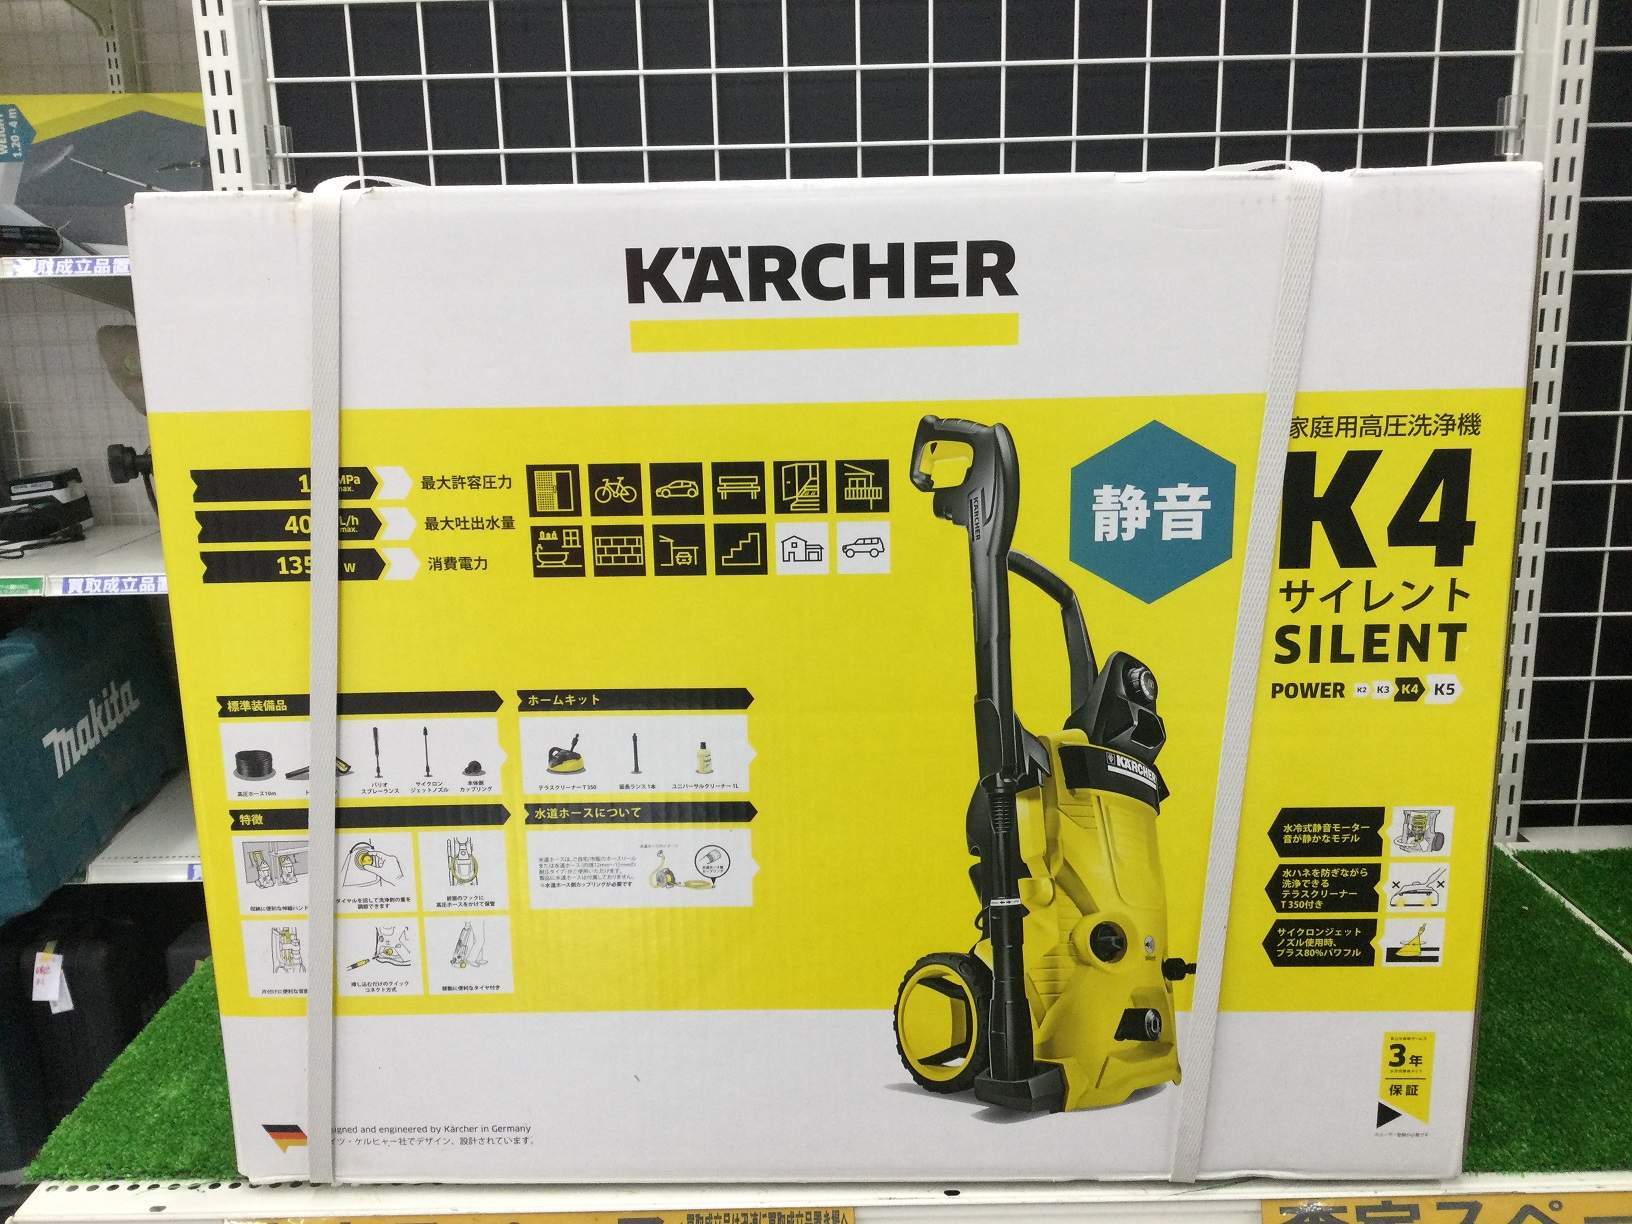 ケルヒャー 家庭用高圧洗浄機 K4サイレント 西日本/地域用を小牧